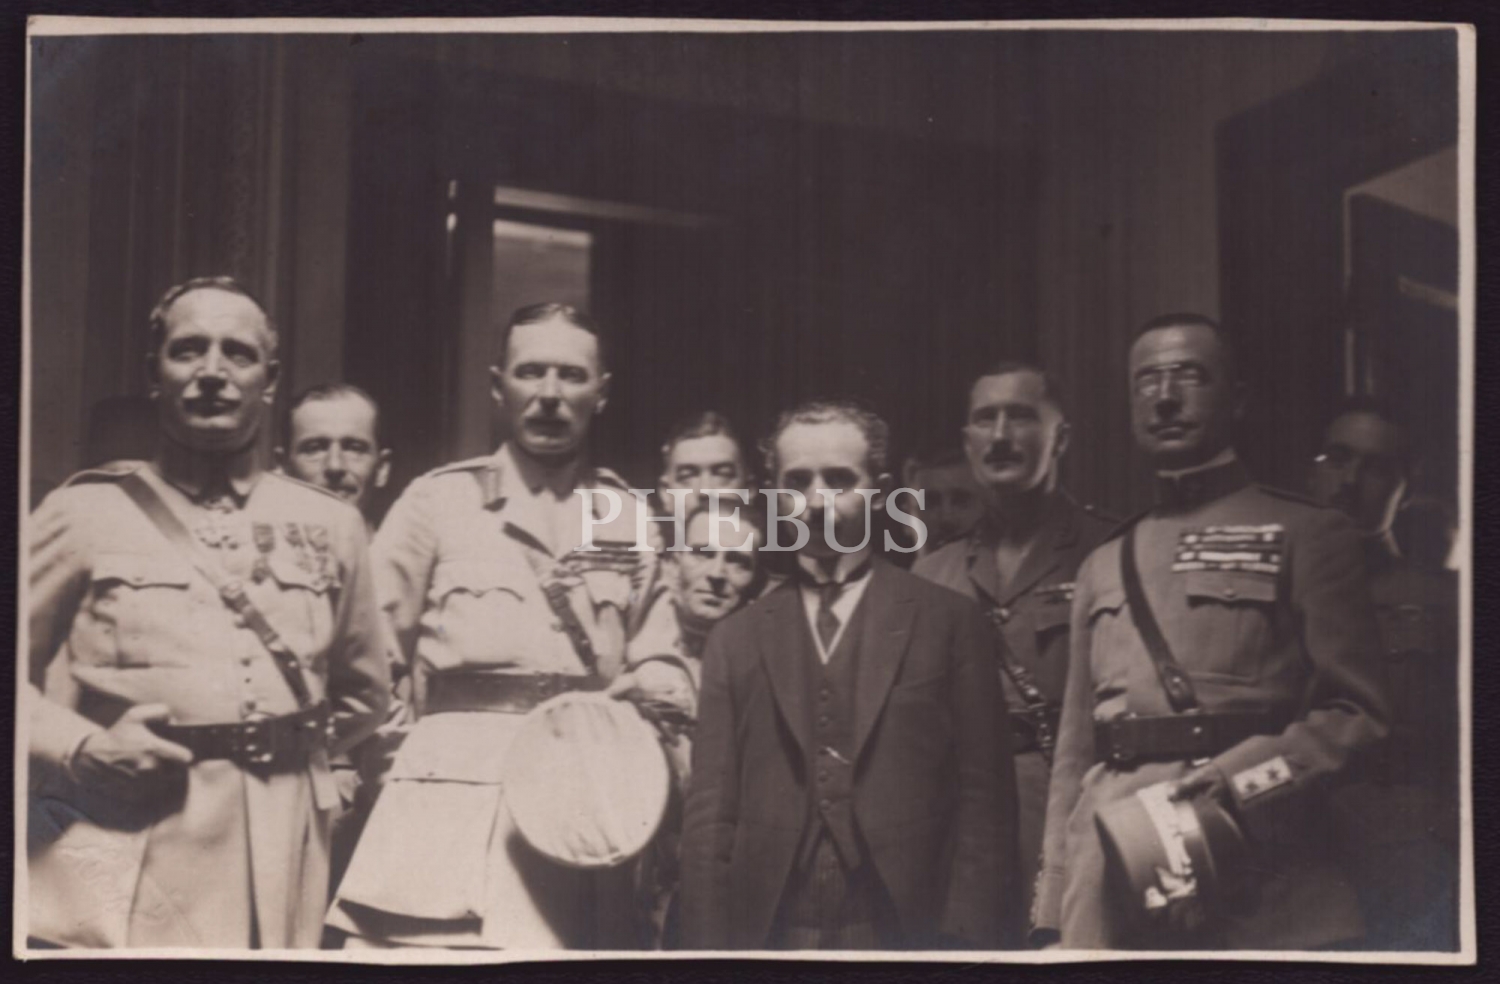 Mudanya Mütarekesi sonrası İtilaf Devletleri´nin temsilcileriyle hatıra fotoğrafı çektiren İsmet İnönü, 11 Ekim 1922, Foto Ferit İbrahim soğuk damgalı, 14x9 cm...